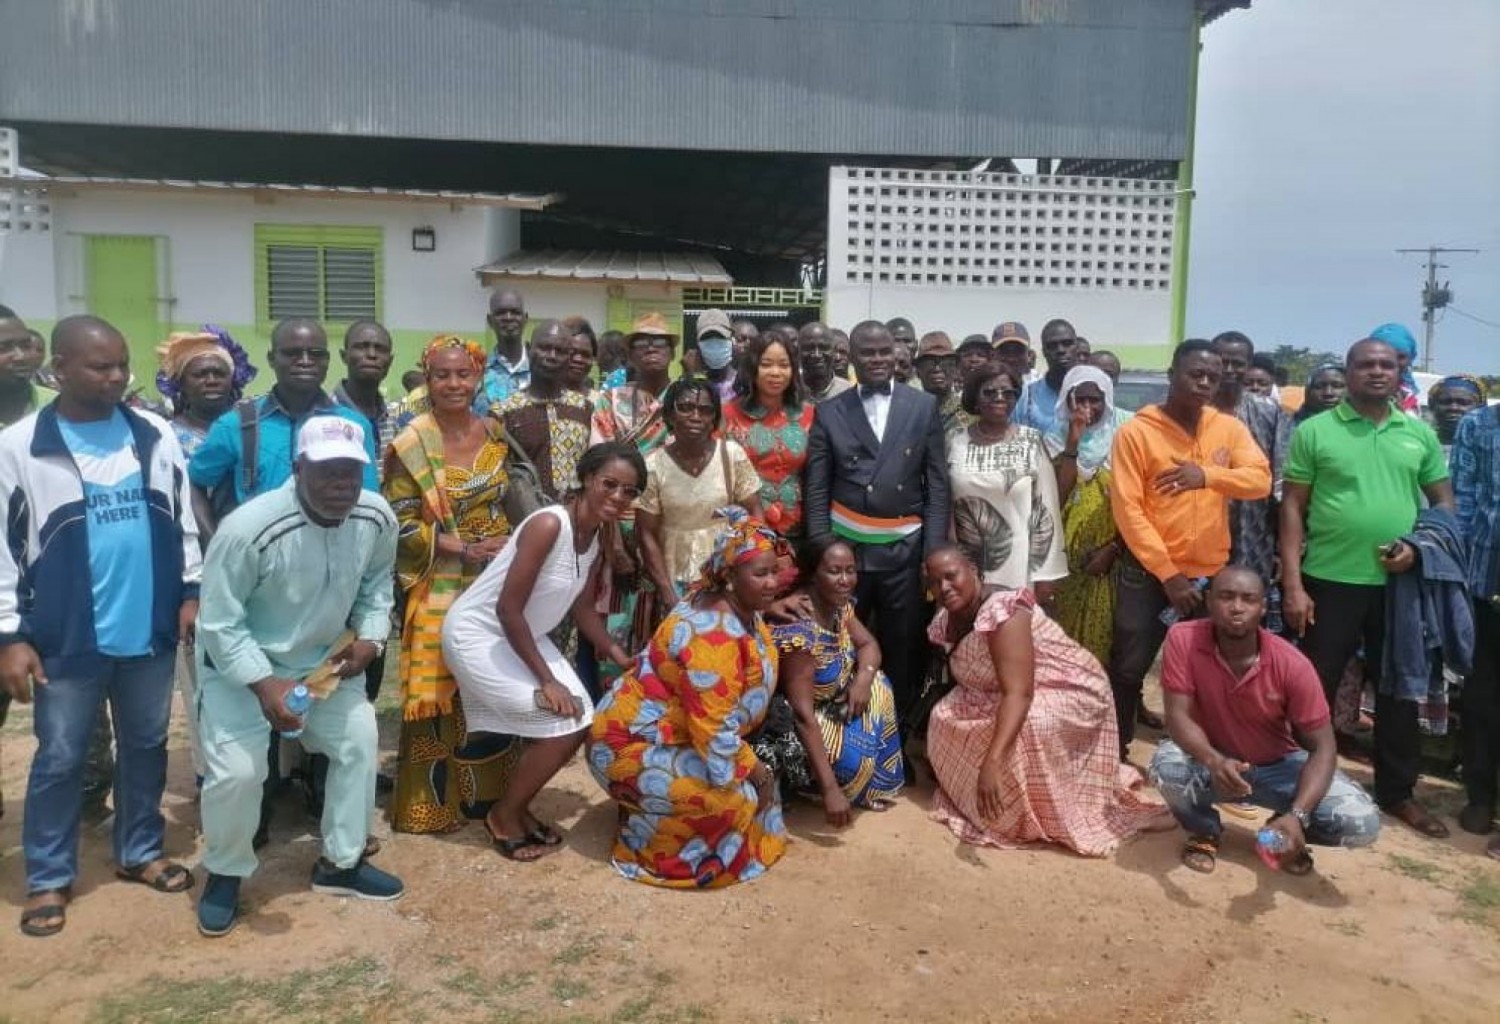 Côte d'Ivoire : Visite de Ouattara à Agboville, mobilisation de la population de Taabo autour de son Maire pour accueillir le président